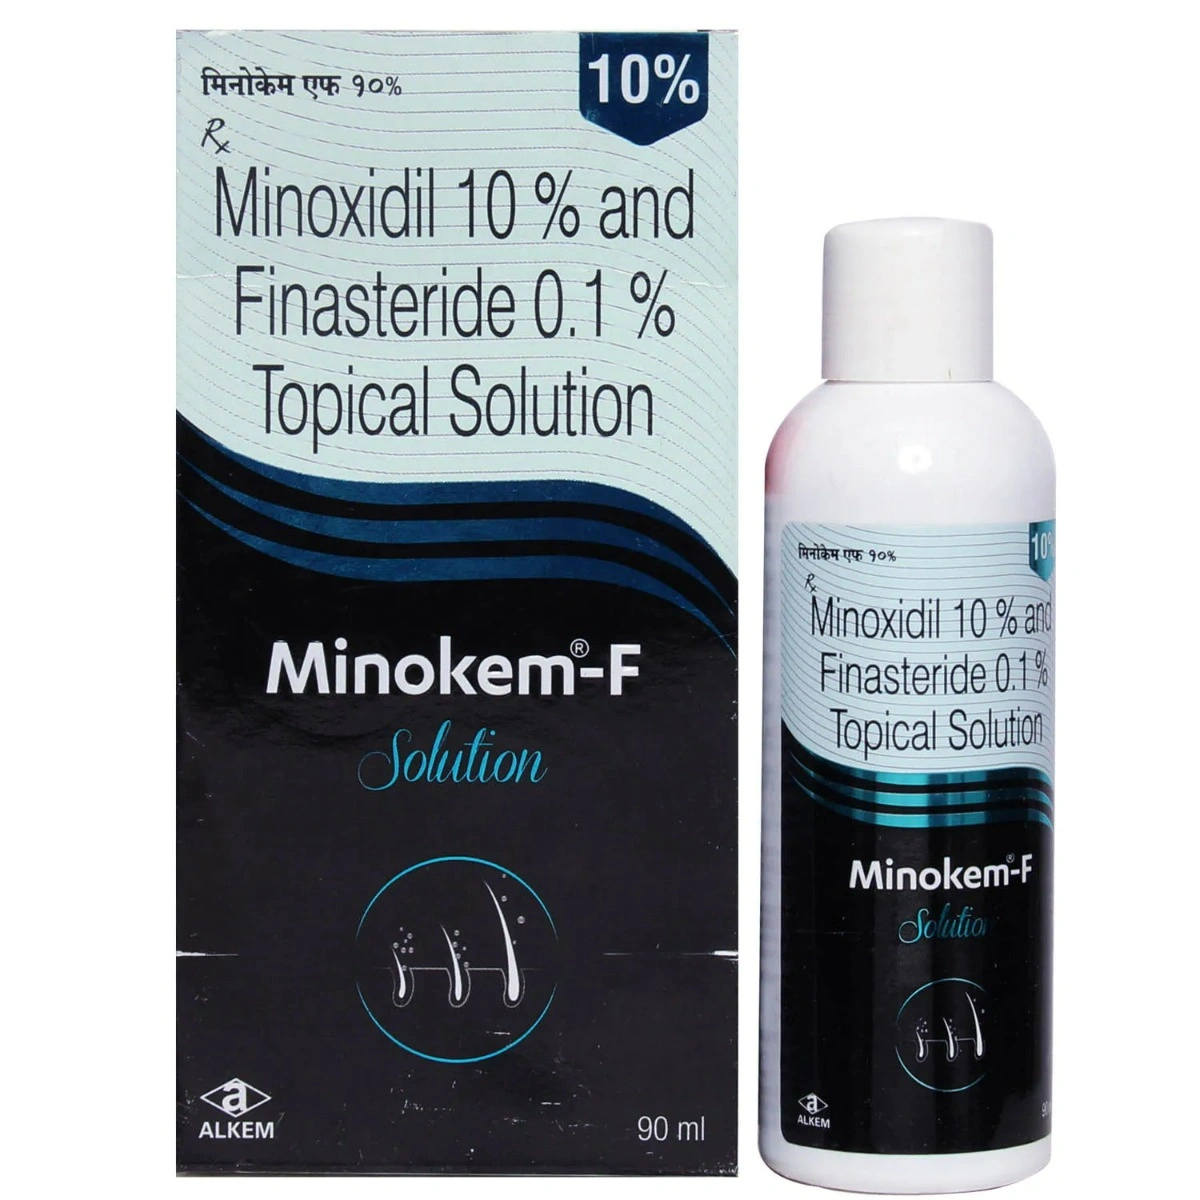 Minokem-F 5% Solution